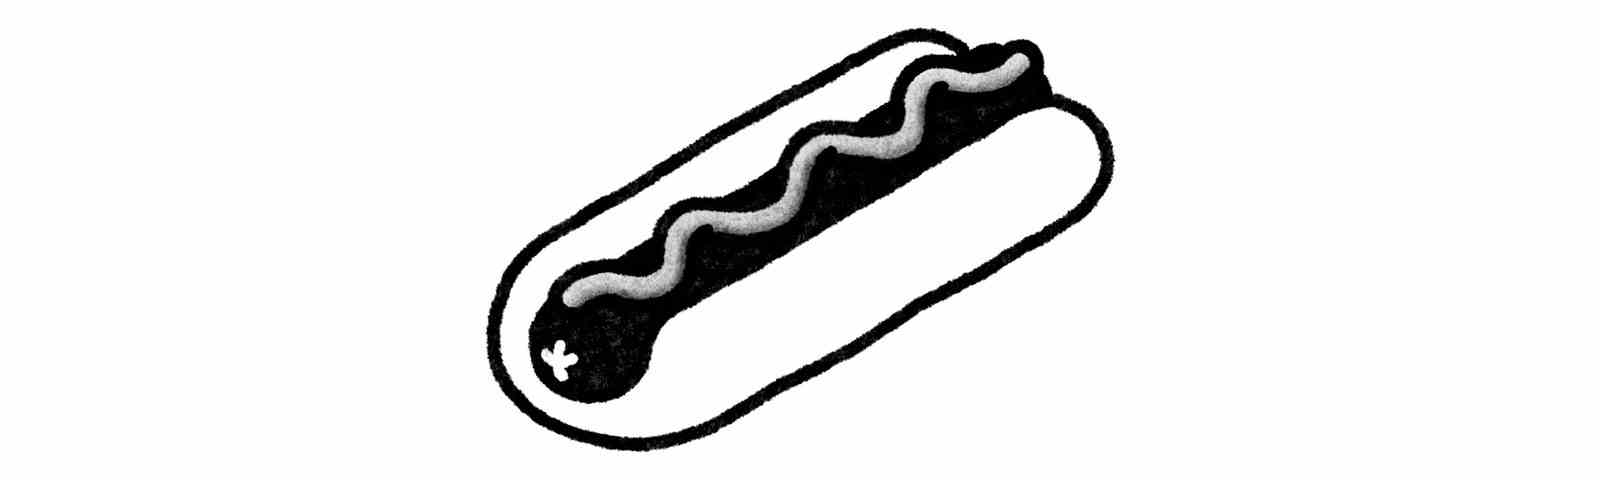 Hotdog-Paste, die als Gewürz für Hotdogs verwendet wird.